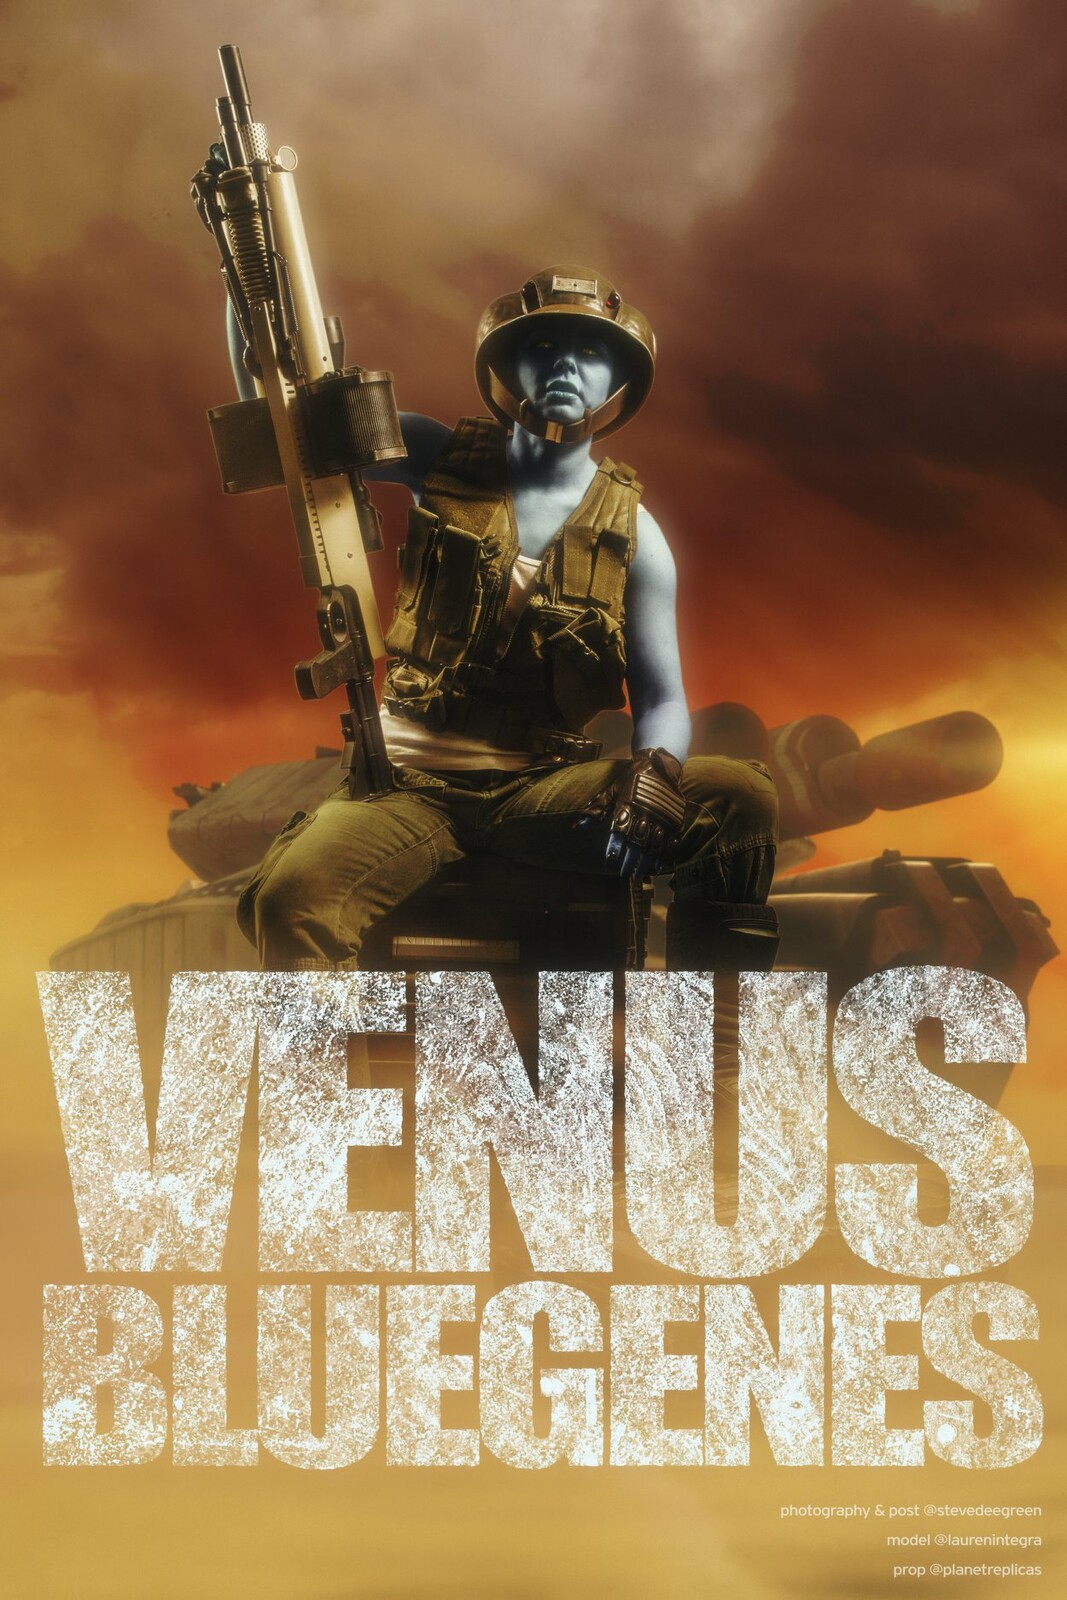 Venus Bluegenes photoshoot/photomanipulation